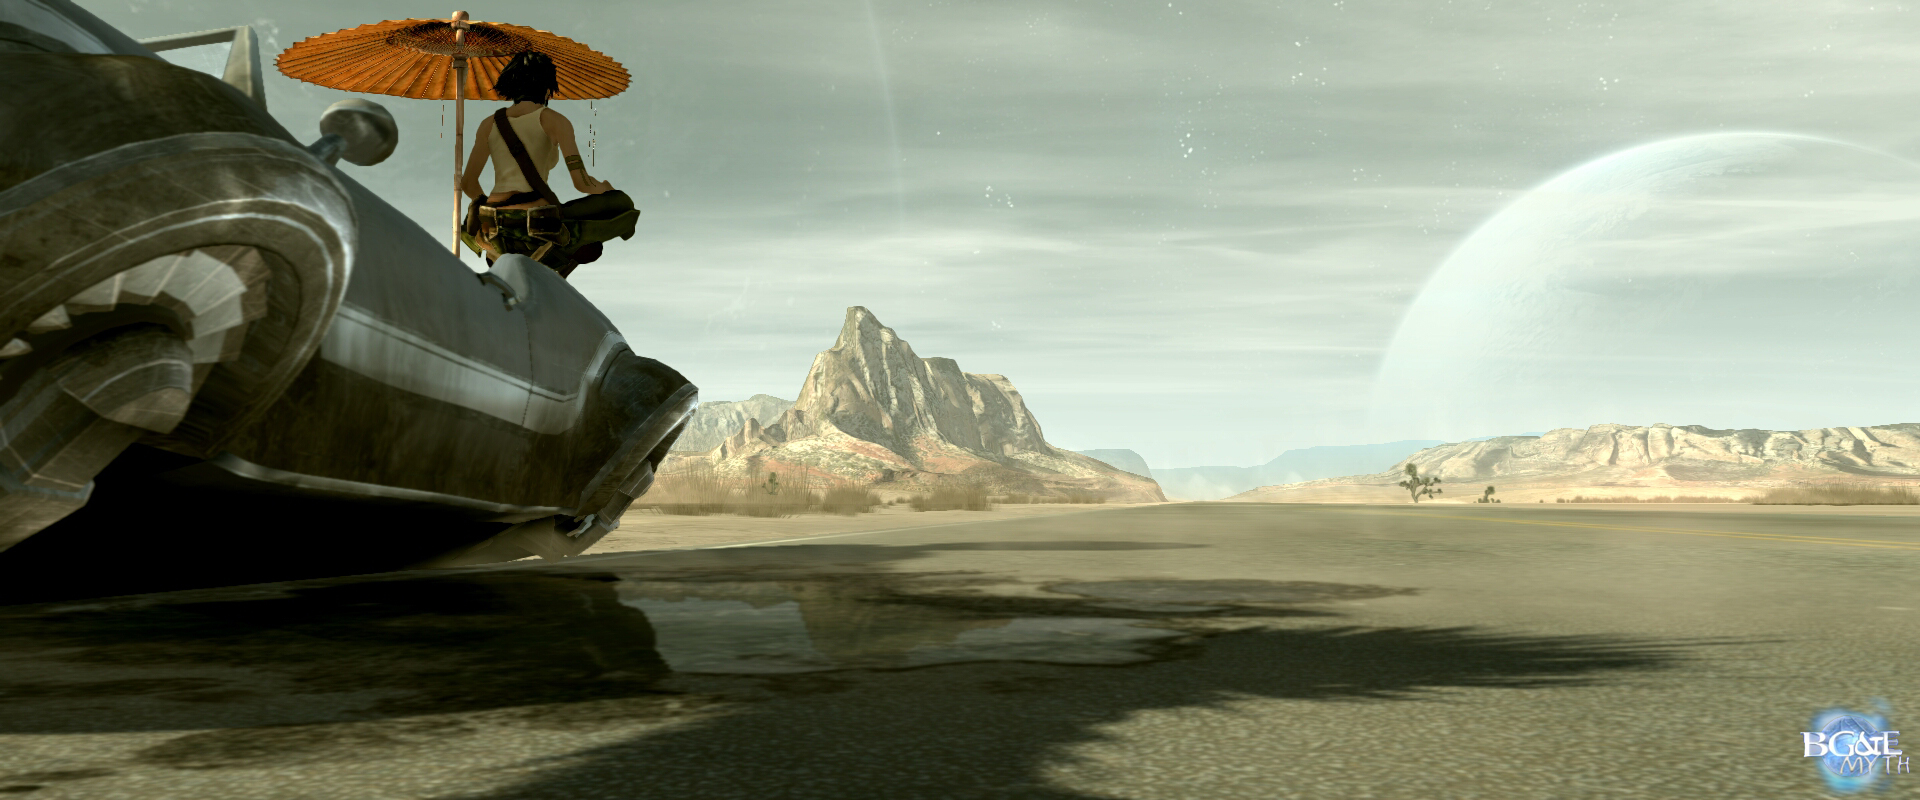 Premières images de BG&E 2 : Jade médite dans le désert